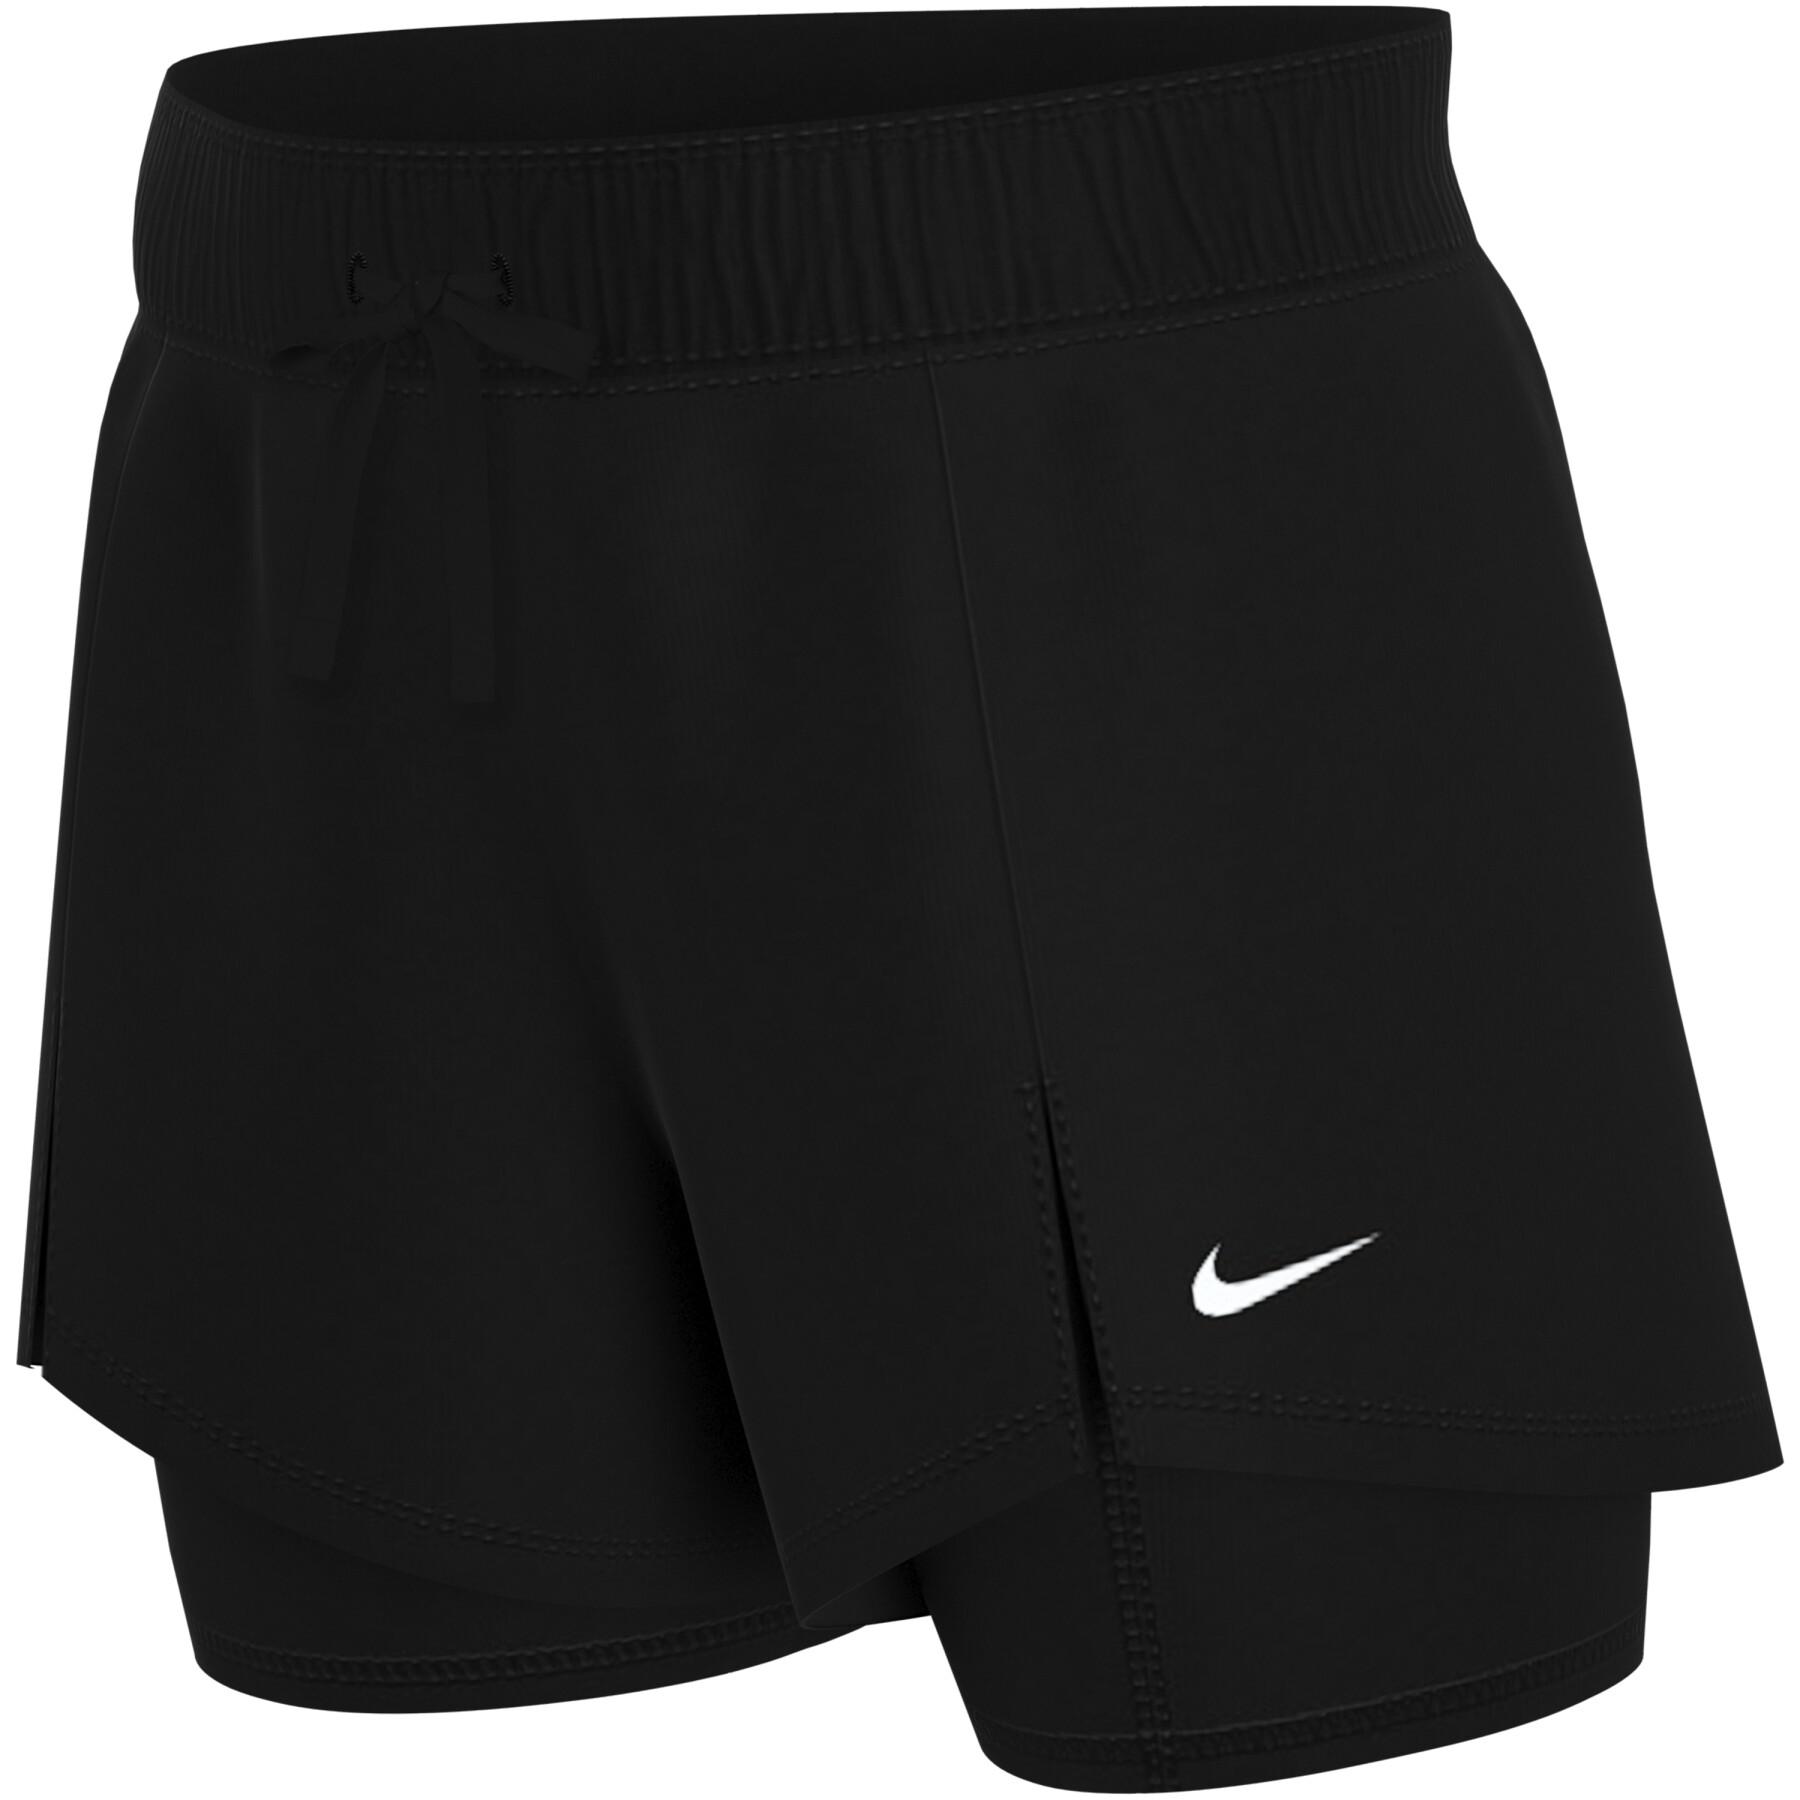 Dames shorts Nike flex essential 2-in-1